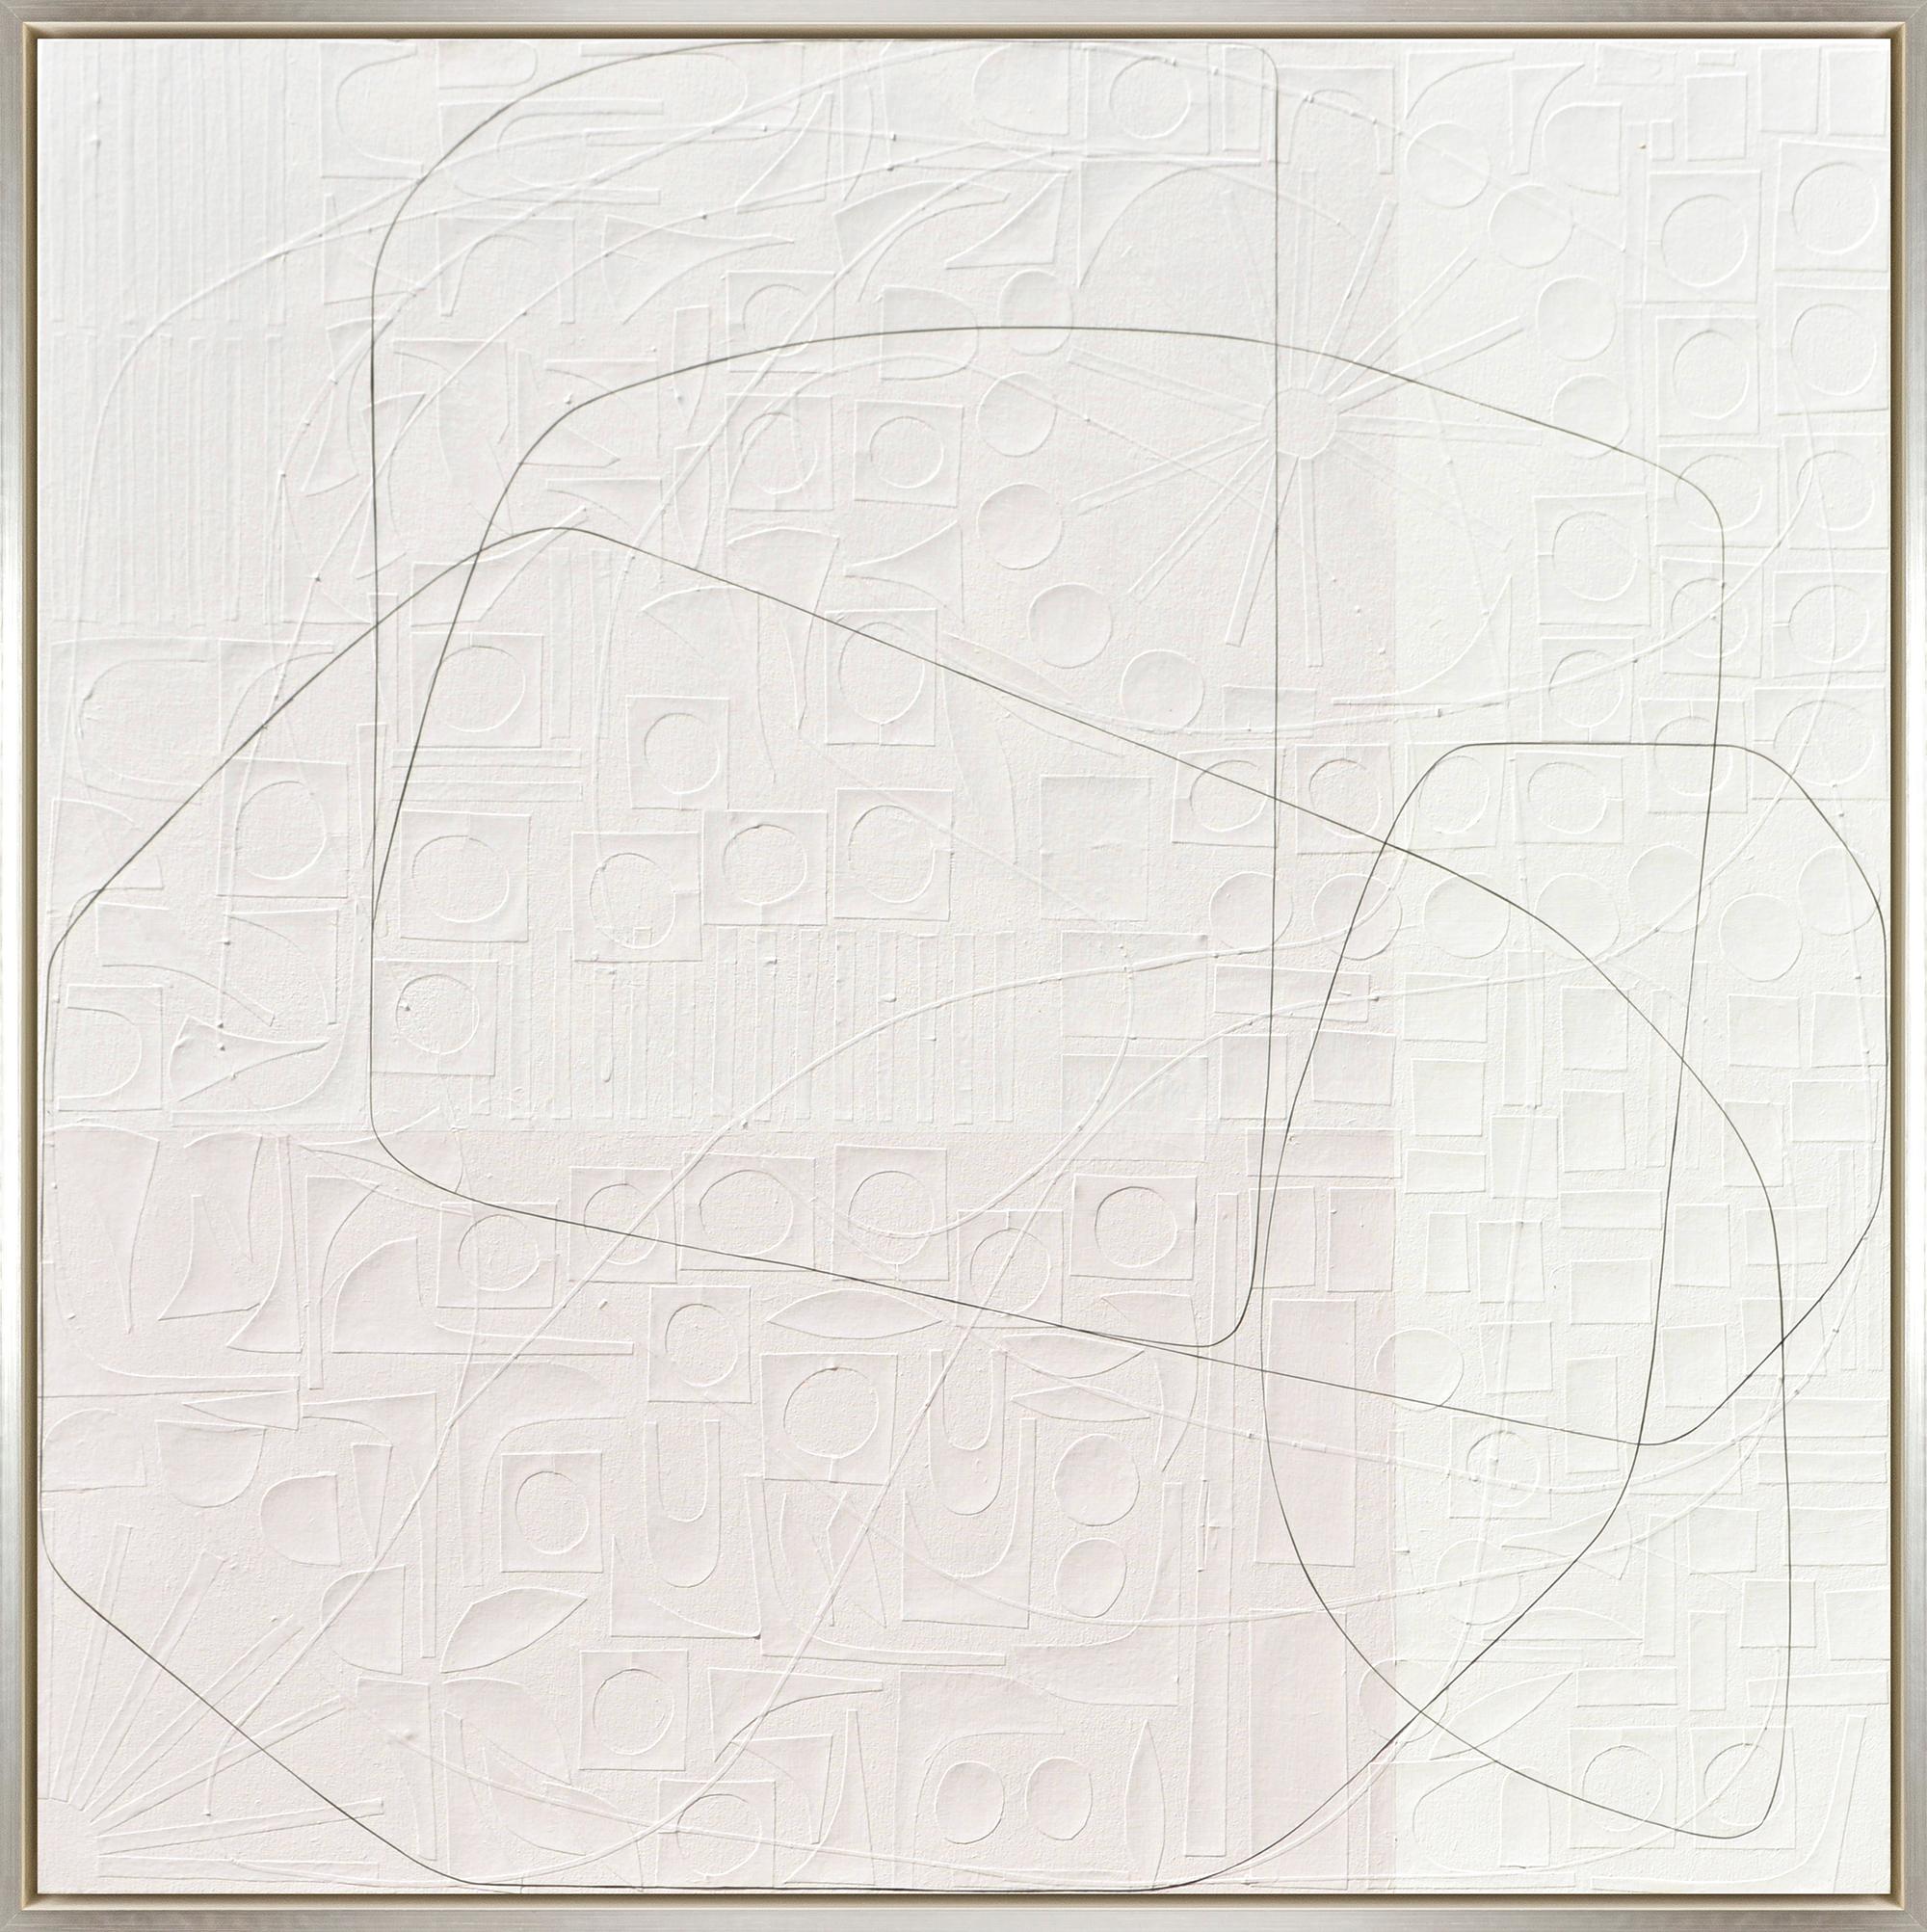 "Joshua Tree" Contemporary Abstract Mixed Media on Canvas Framed Painting